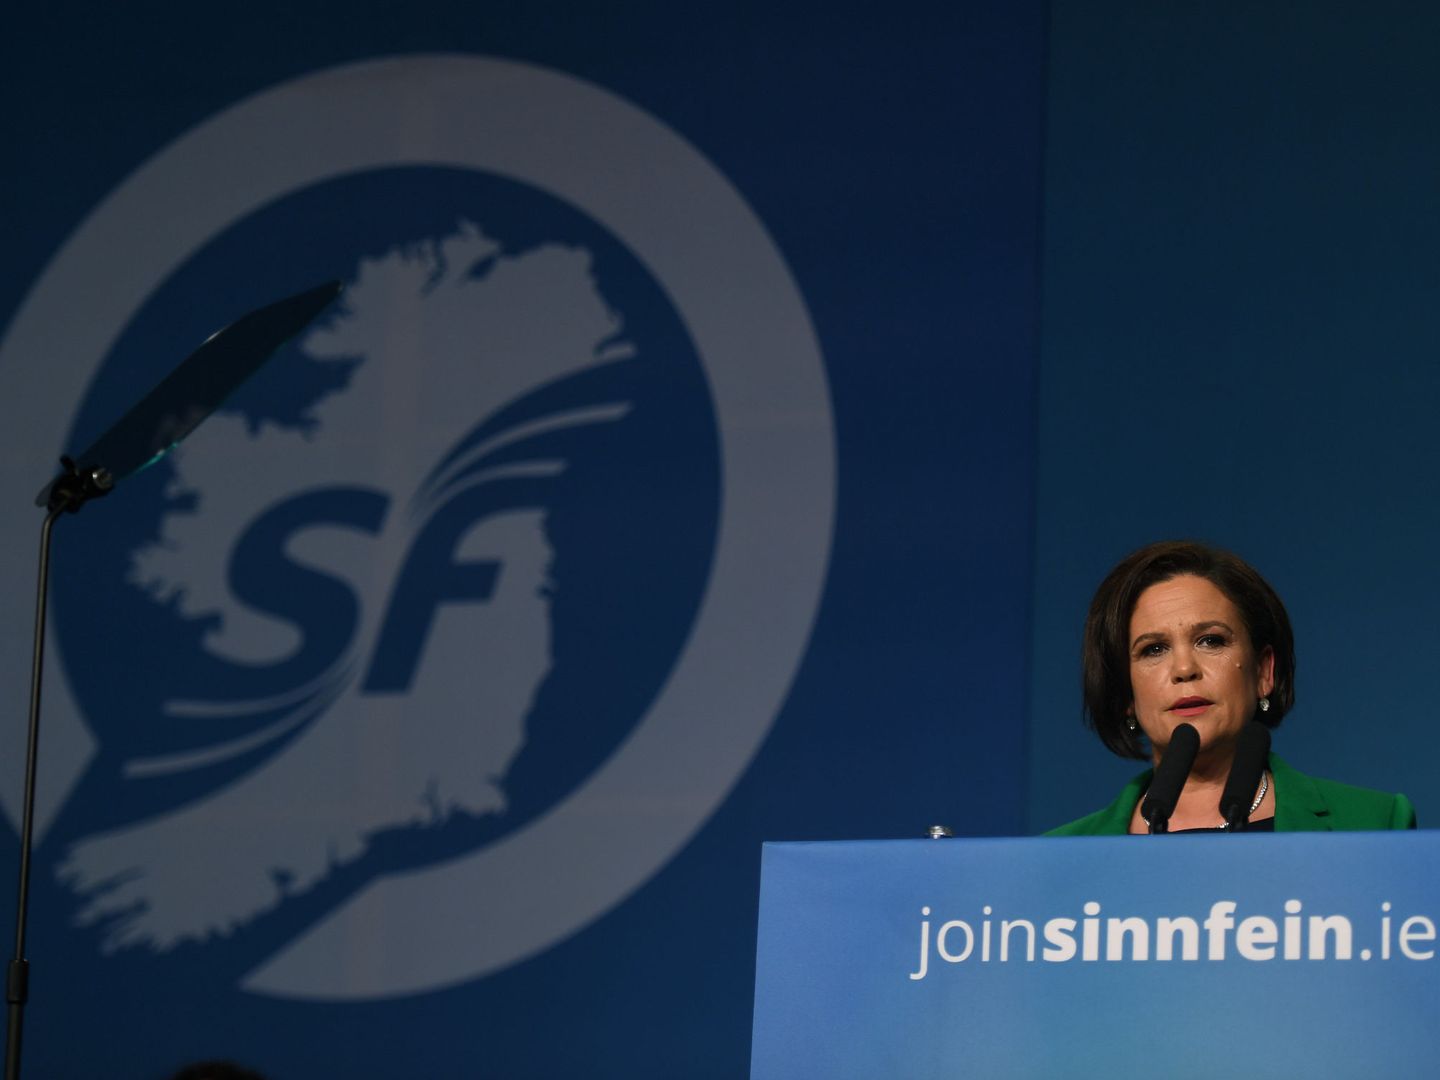 Mary Lou McDonald, la nueva presidente del Sinn Fein tras la salida del líder histórico Gerry Adams, durante su discurso de aceptación en Dublín, el 10 de febrero de 2018. (Reuters)